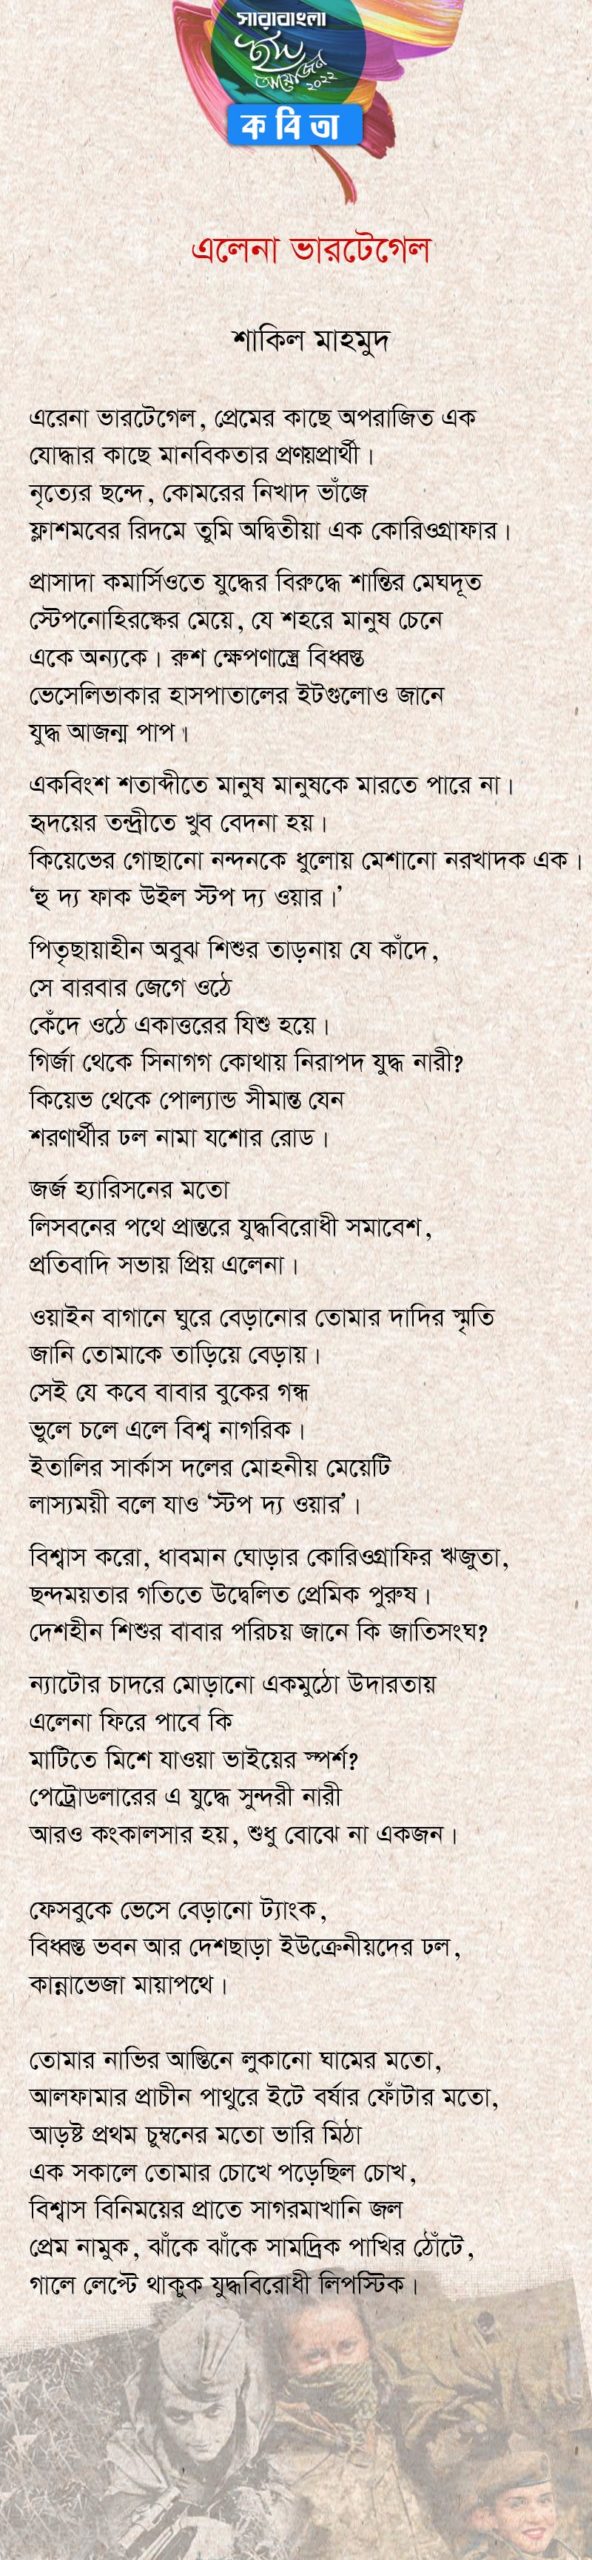 শাকিল মাহমুদ-এর কবিতা